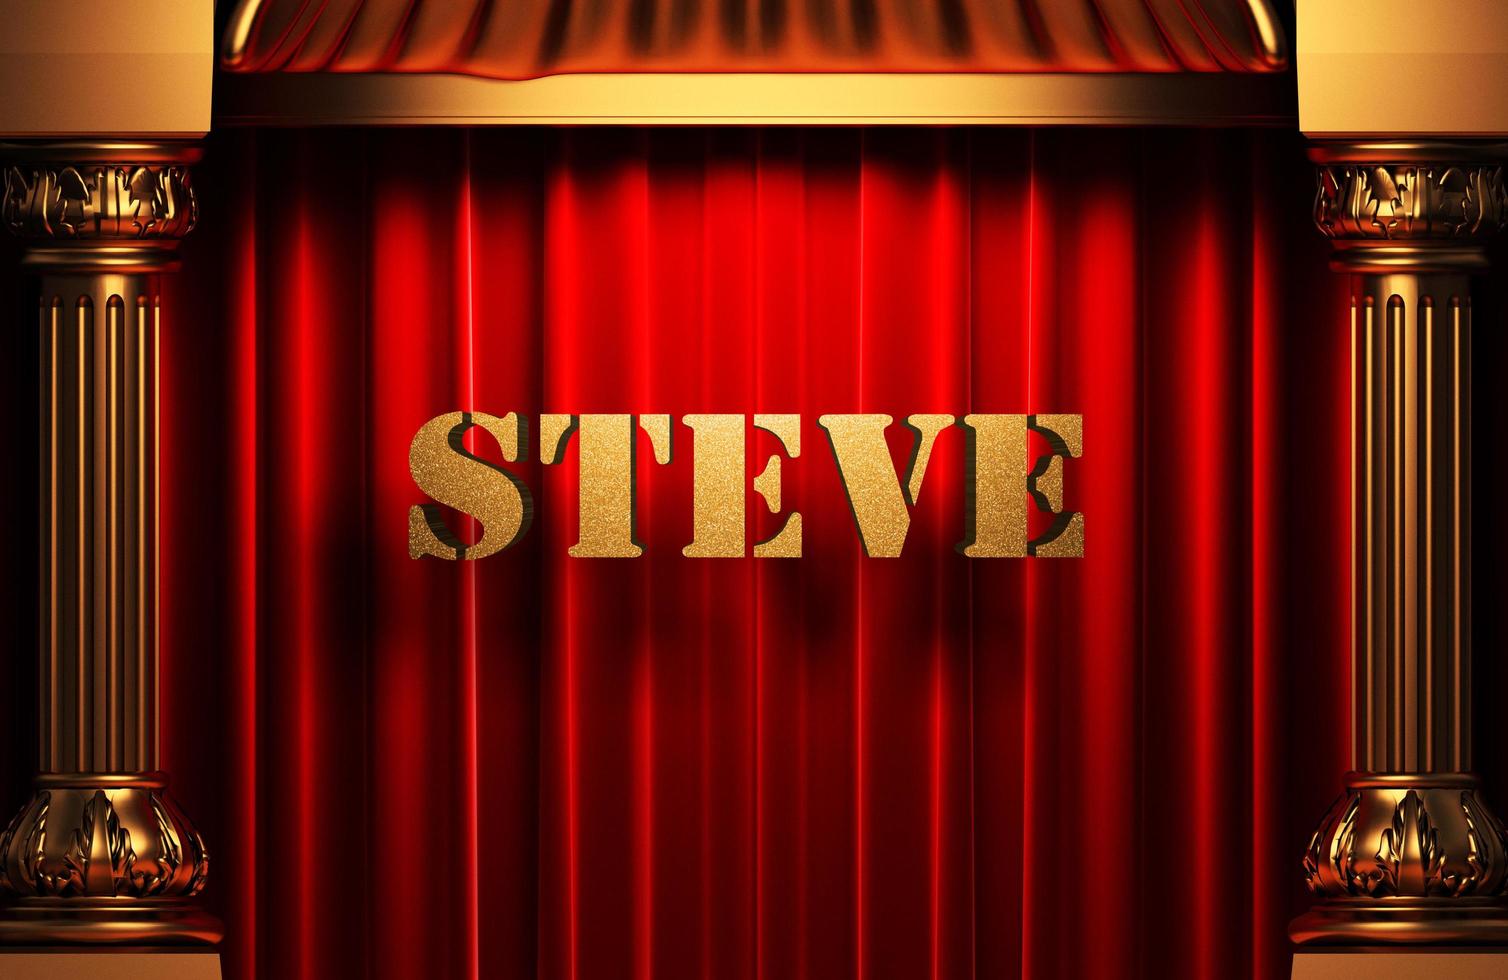 Steve gouden woord op rood gordijn foto